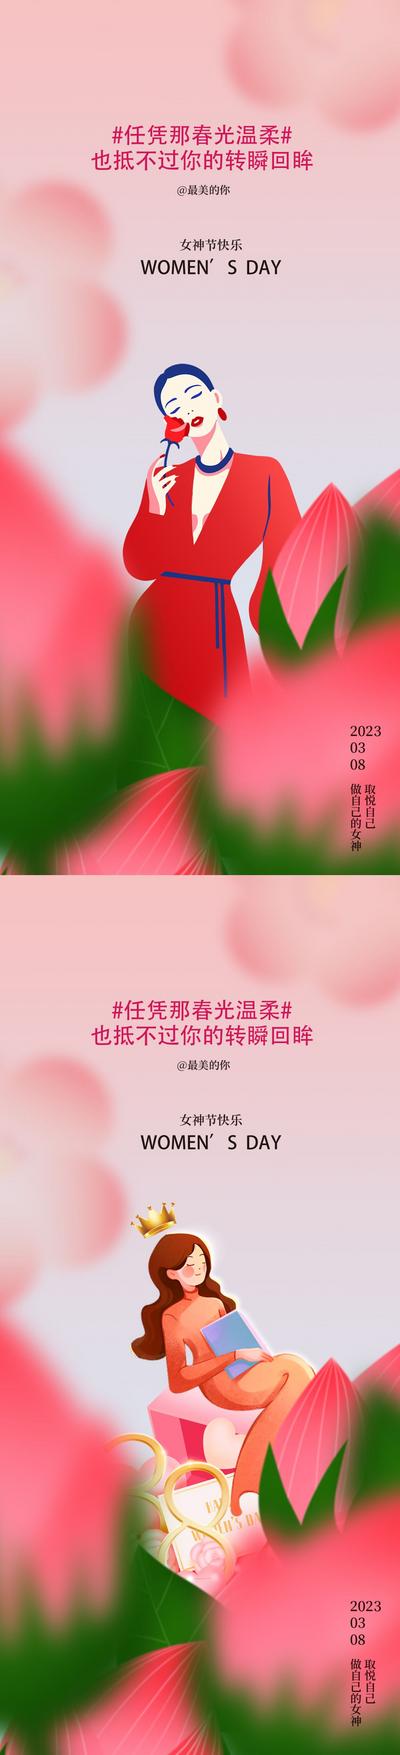 南门网 海报 地产 公历节日 38 女神节 妇女节 花 女人 女王 插画